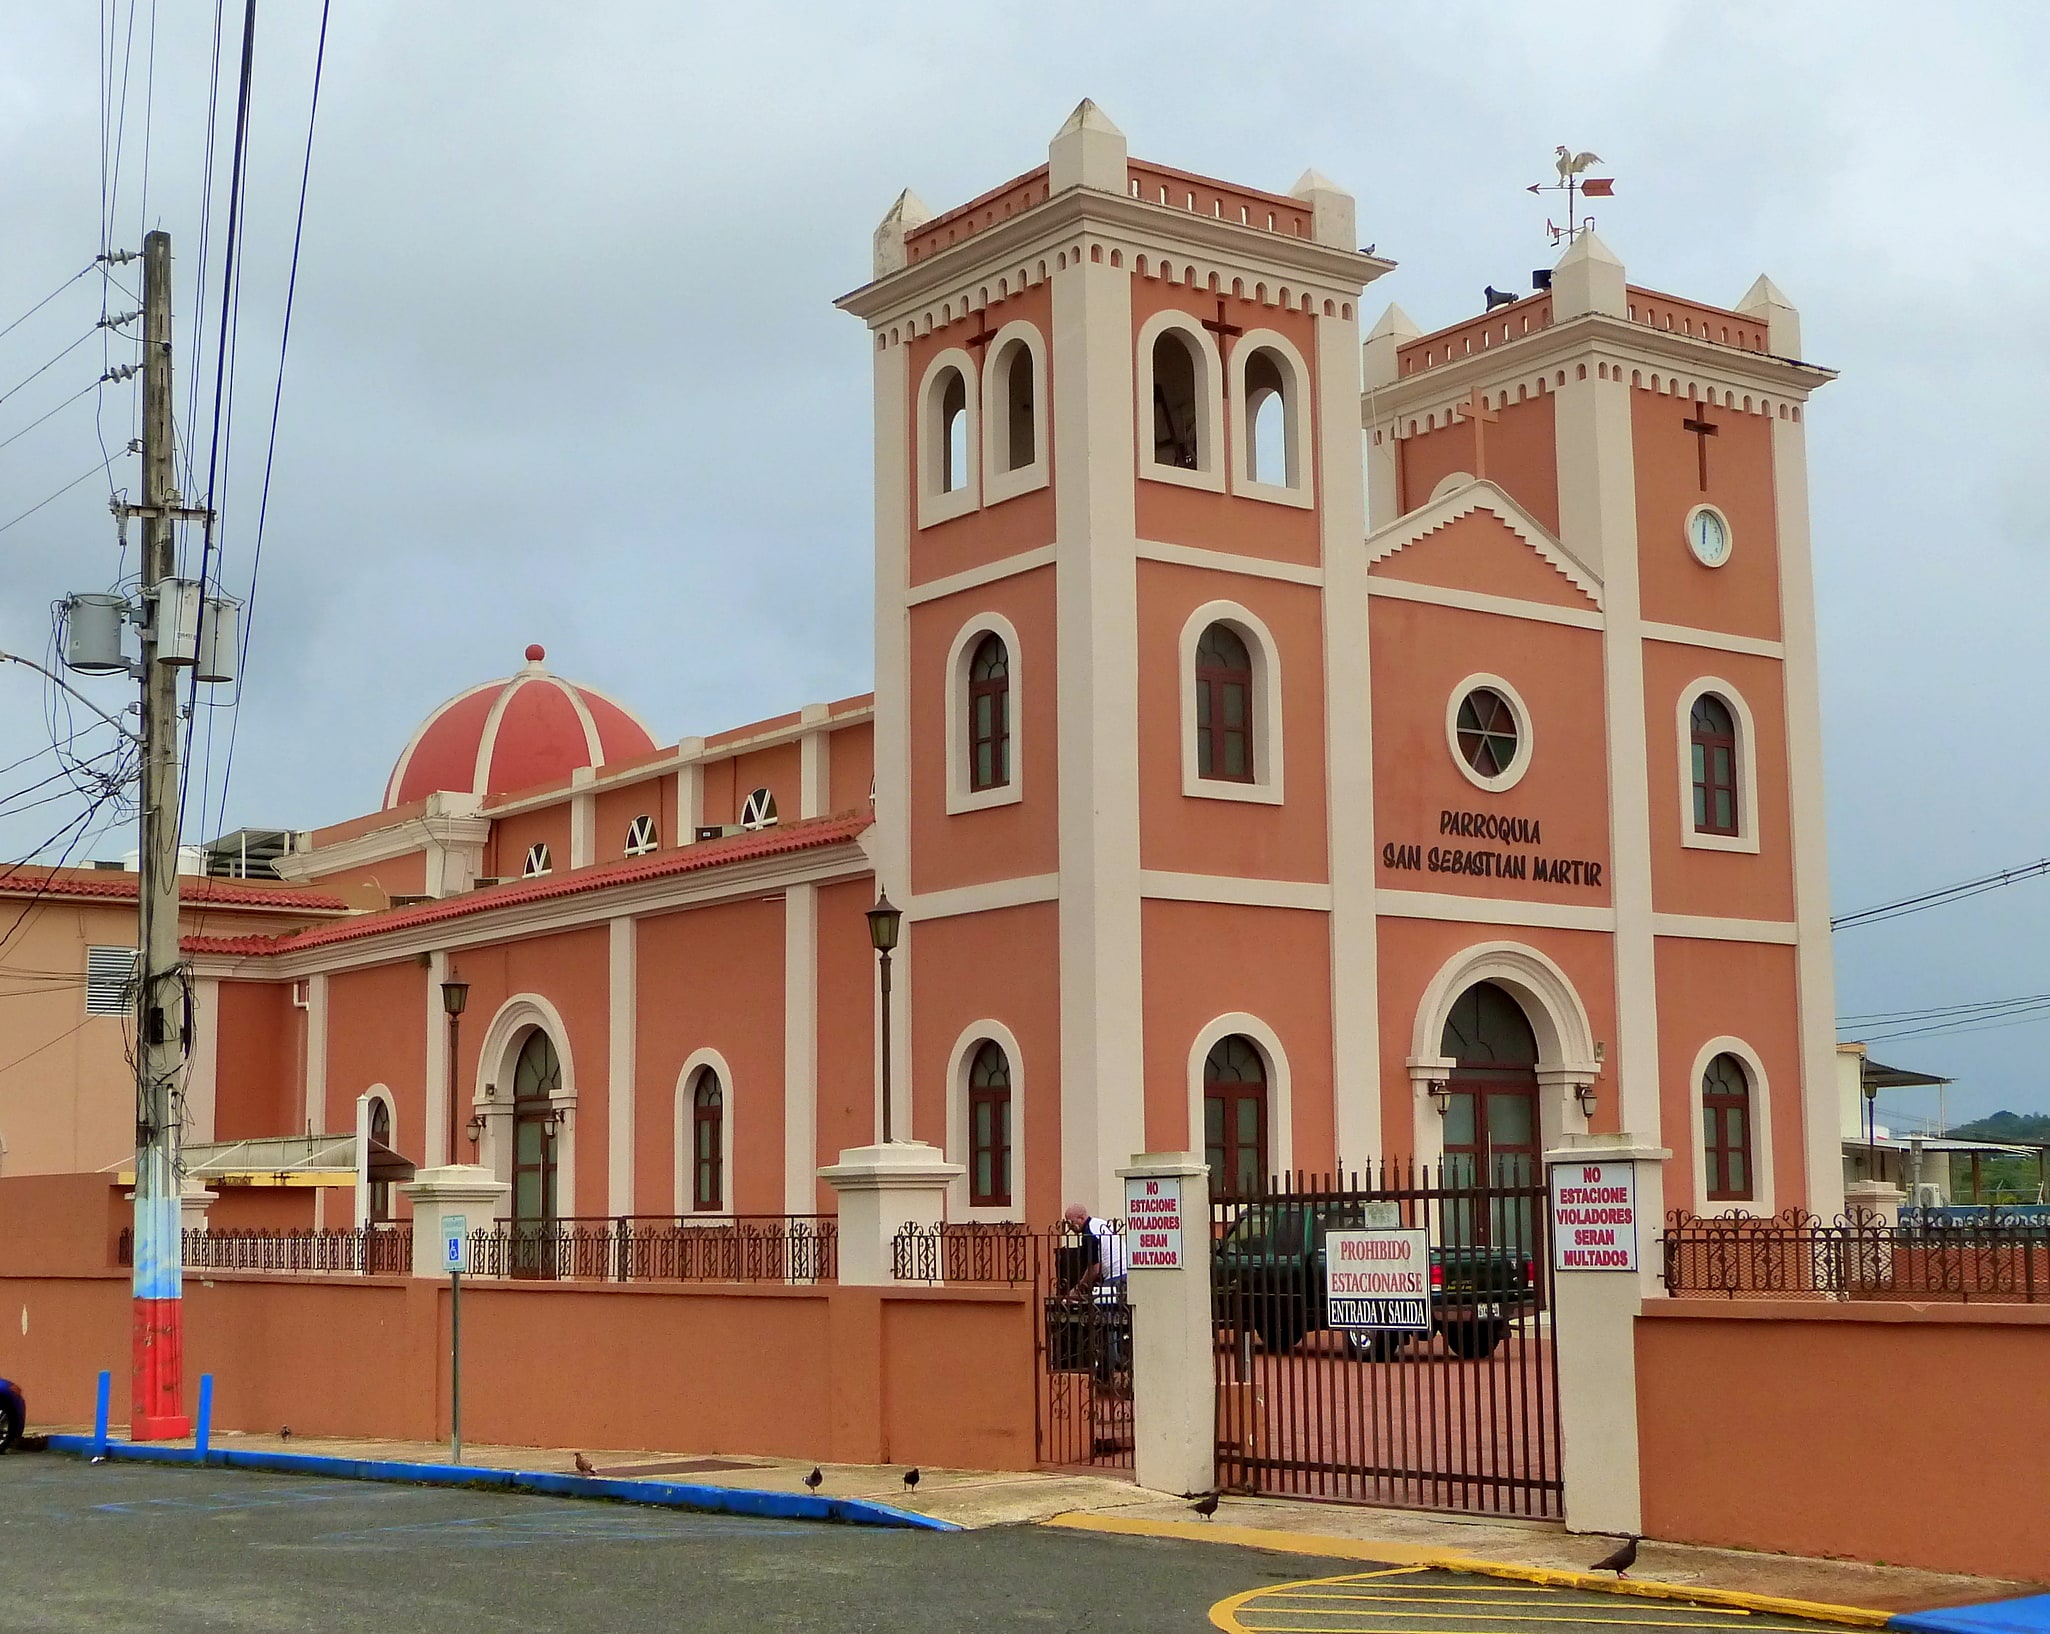 San Sebastián, Porto Rico